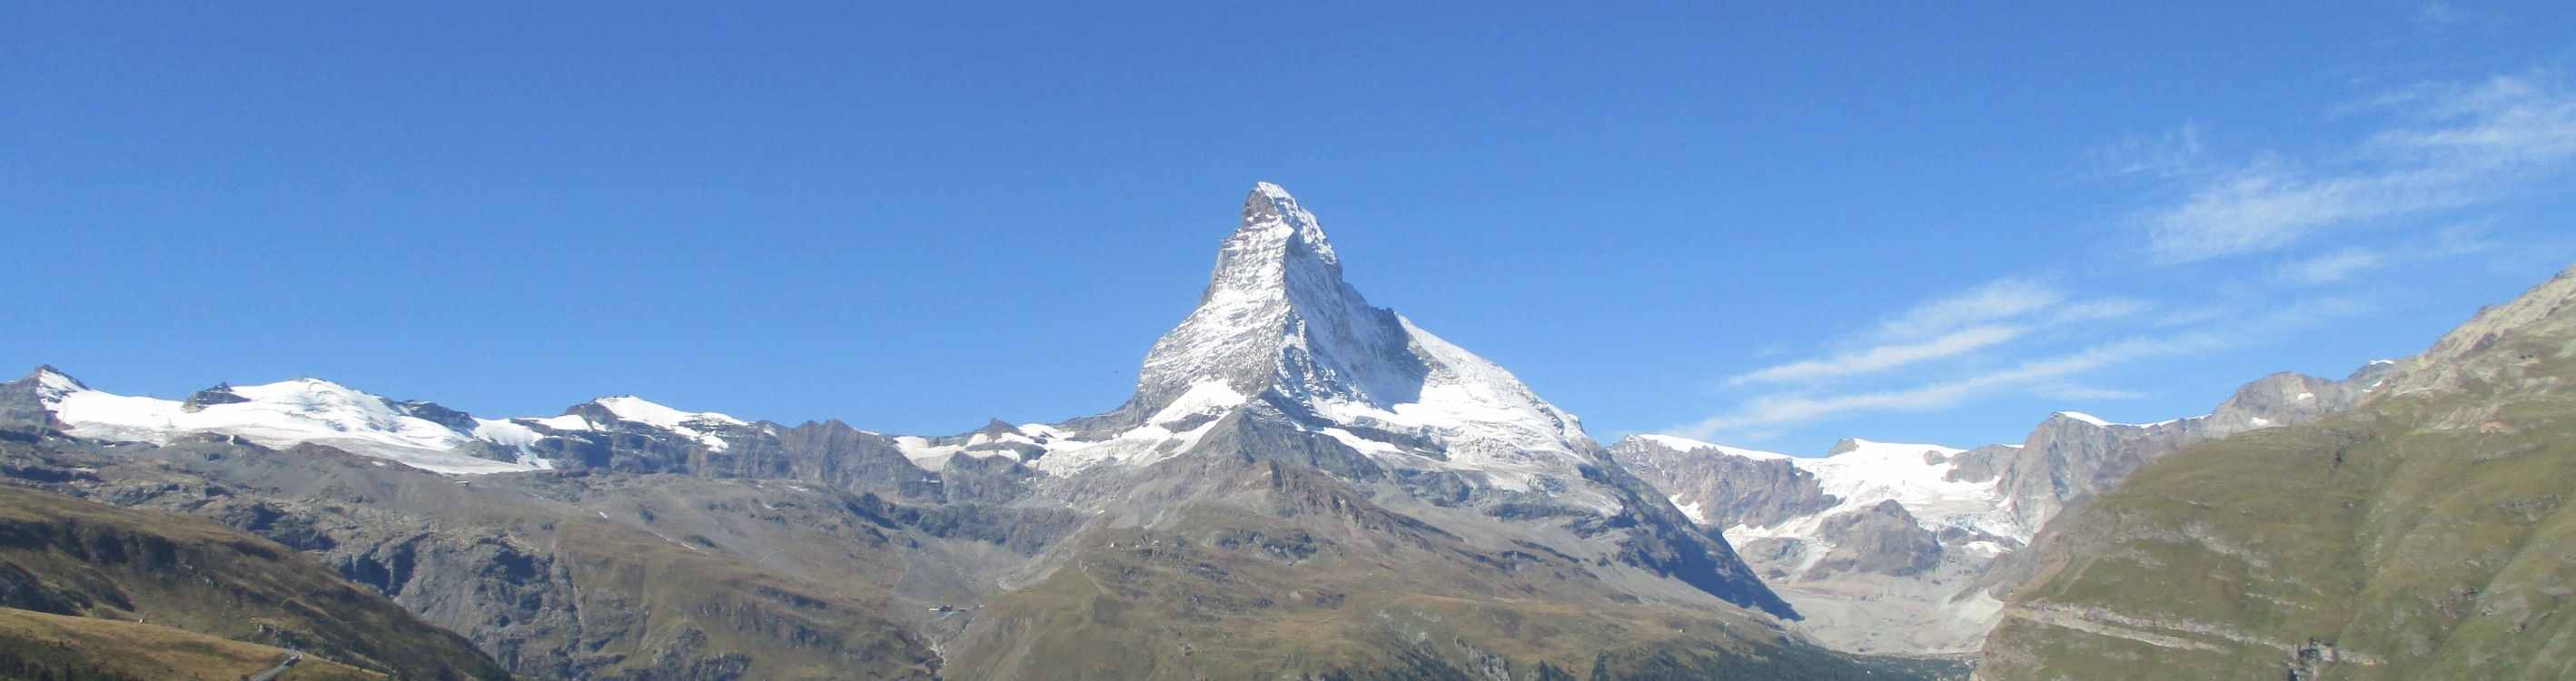 Das Matterhorn bei Zermatt.